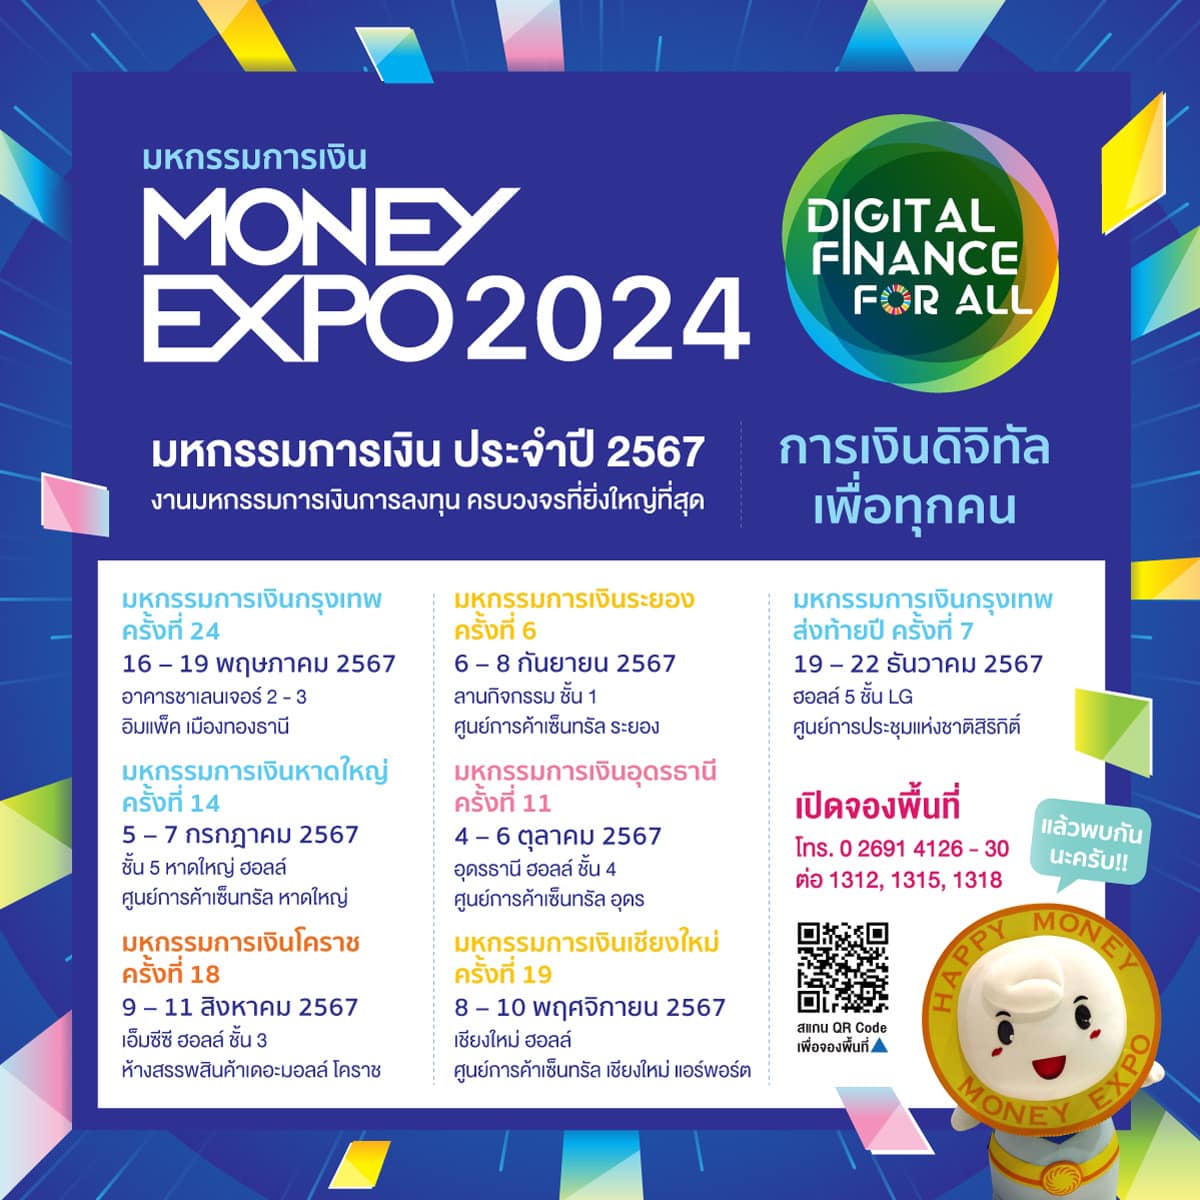 MONEY EXPO 2024 CHIANGMAI